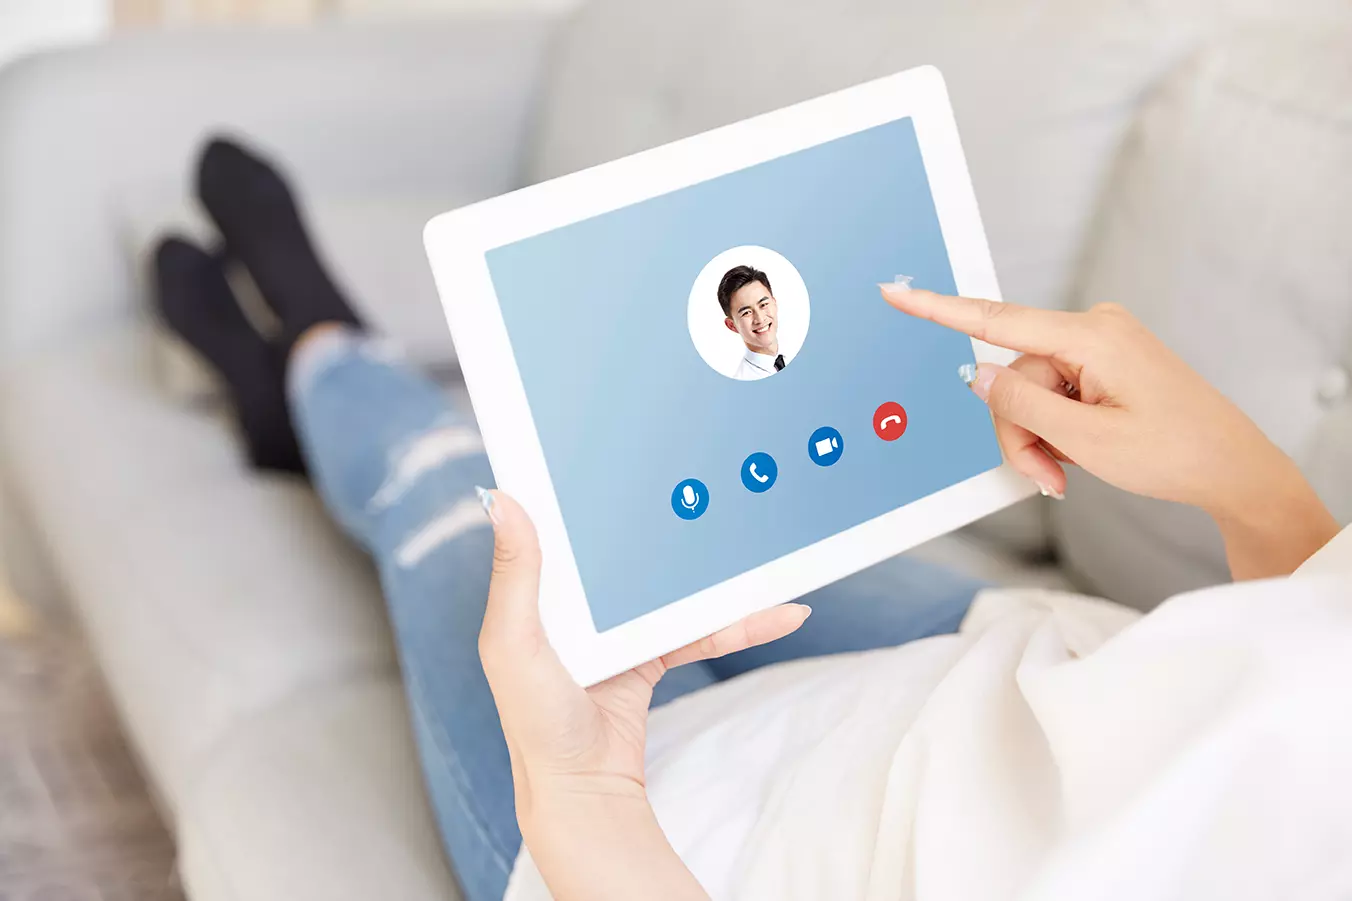 Persona utilizando tableta mostrando el Portal de Facebook un nuevo dispositivo de chat en video de la red social.